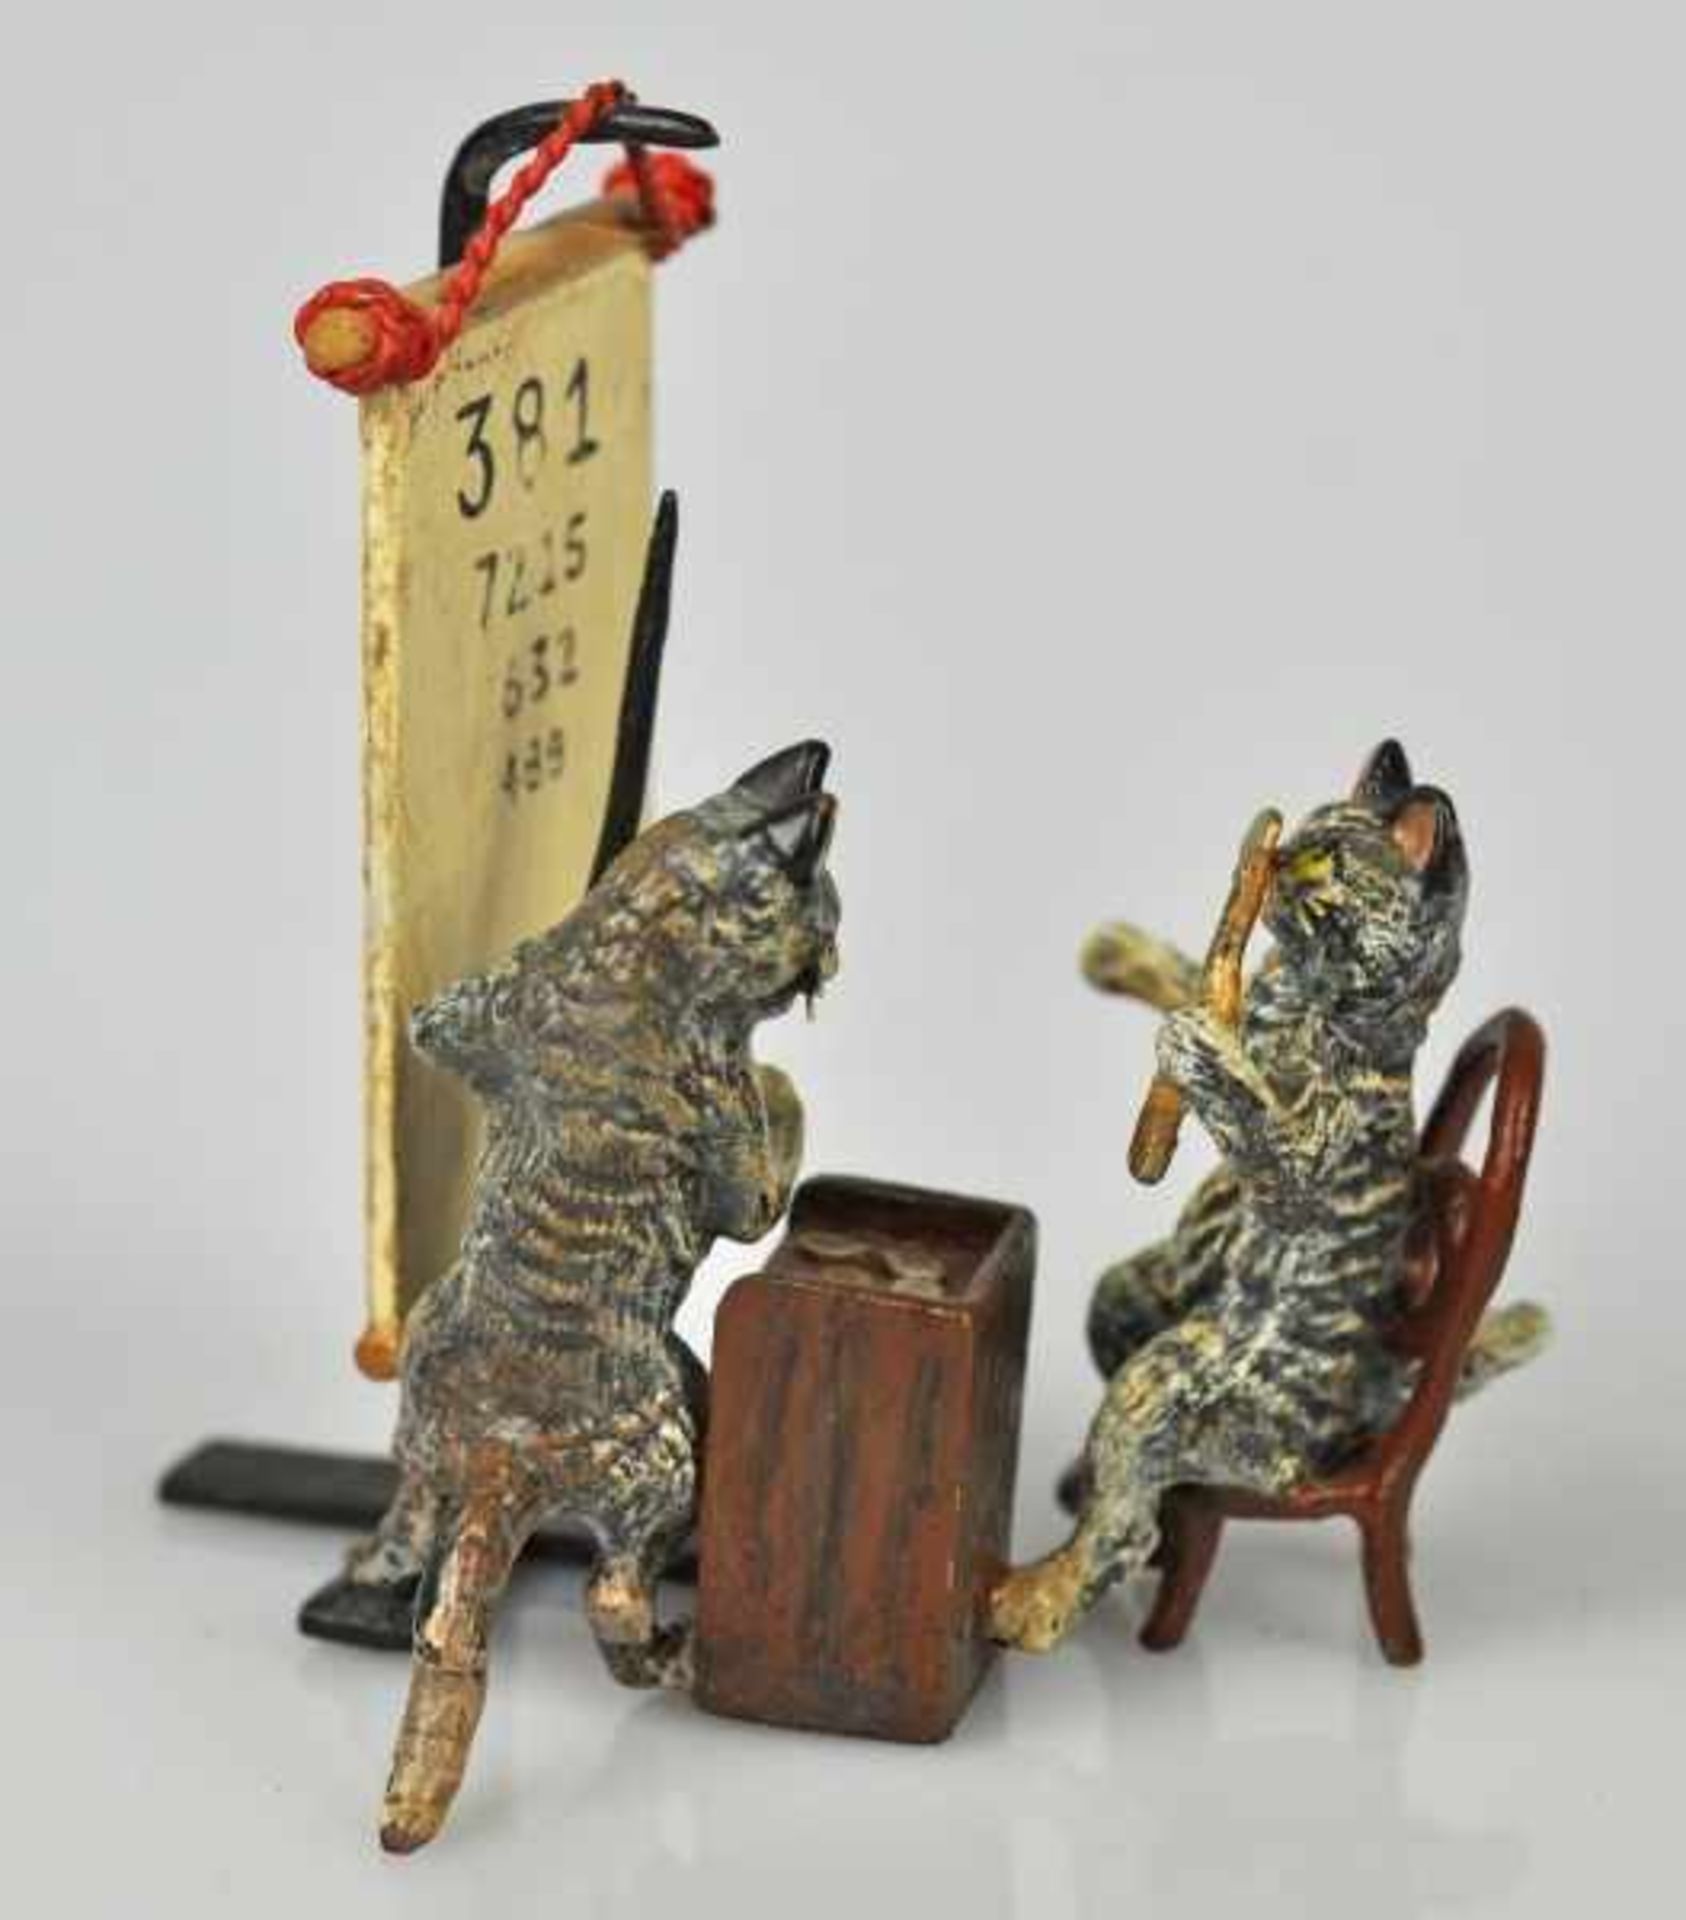 KATZENSEHTEST zwei Katzen beim Sehtest, polychrom bemalt, Wiener Bronze, Marke FBW, 6x4x4cm - Bild 2 aus 4